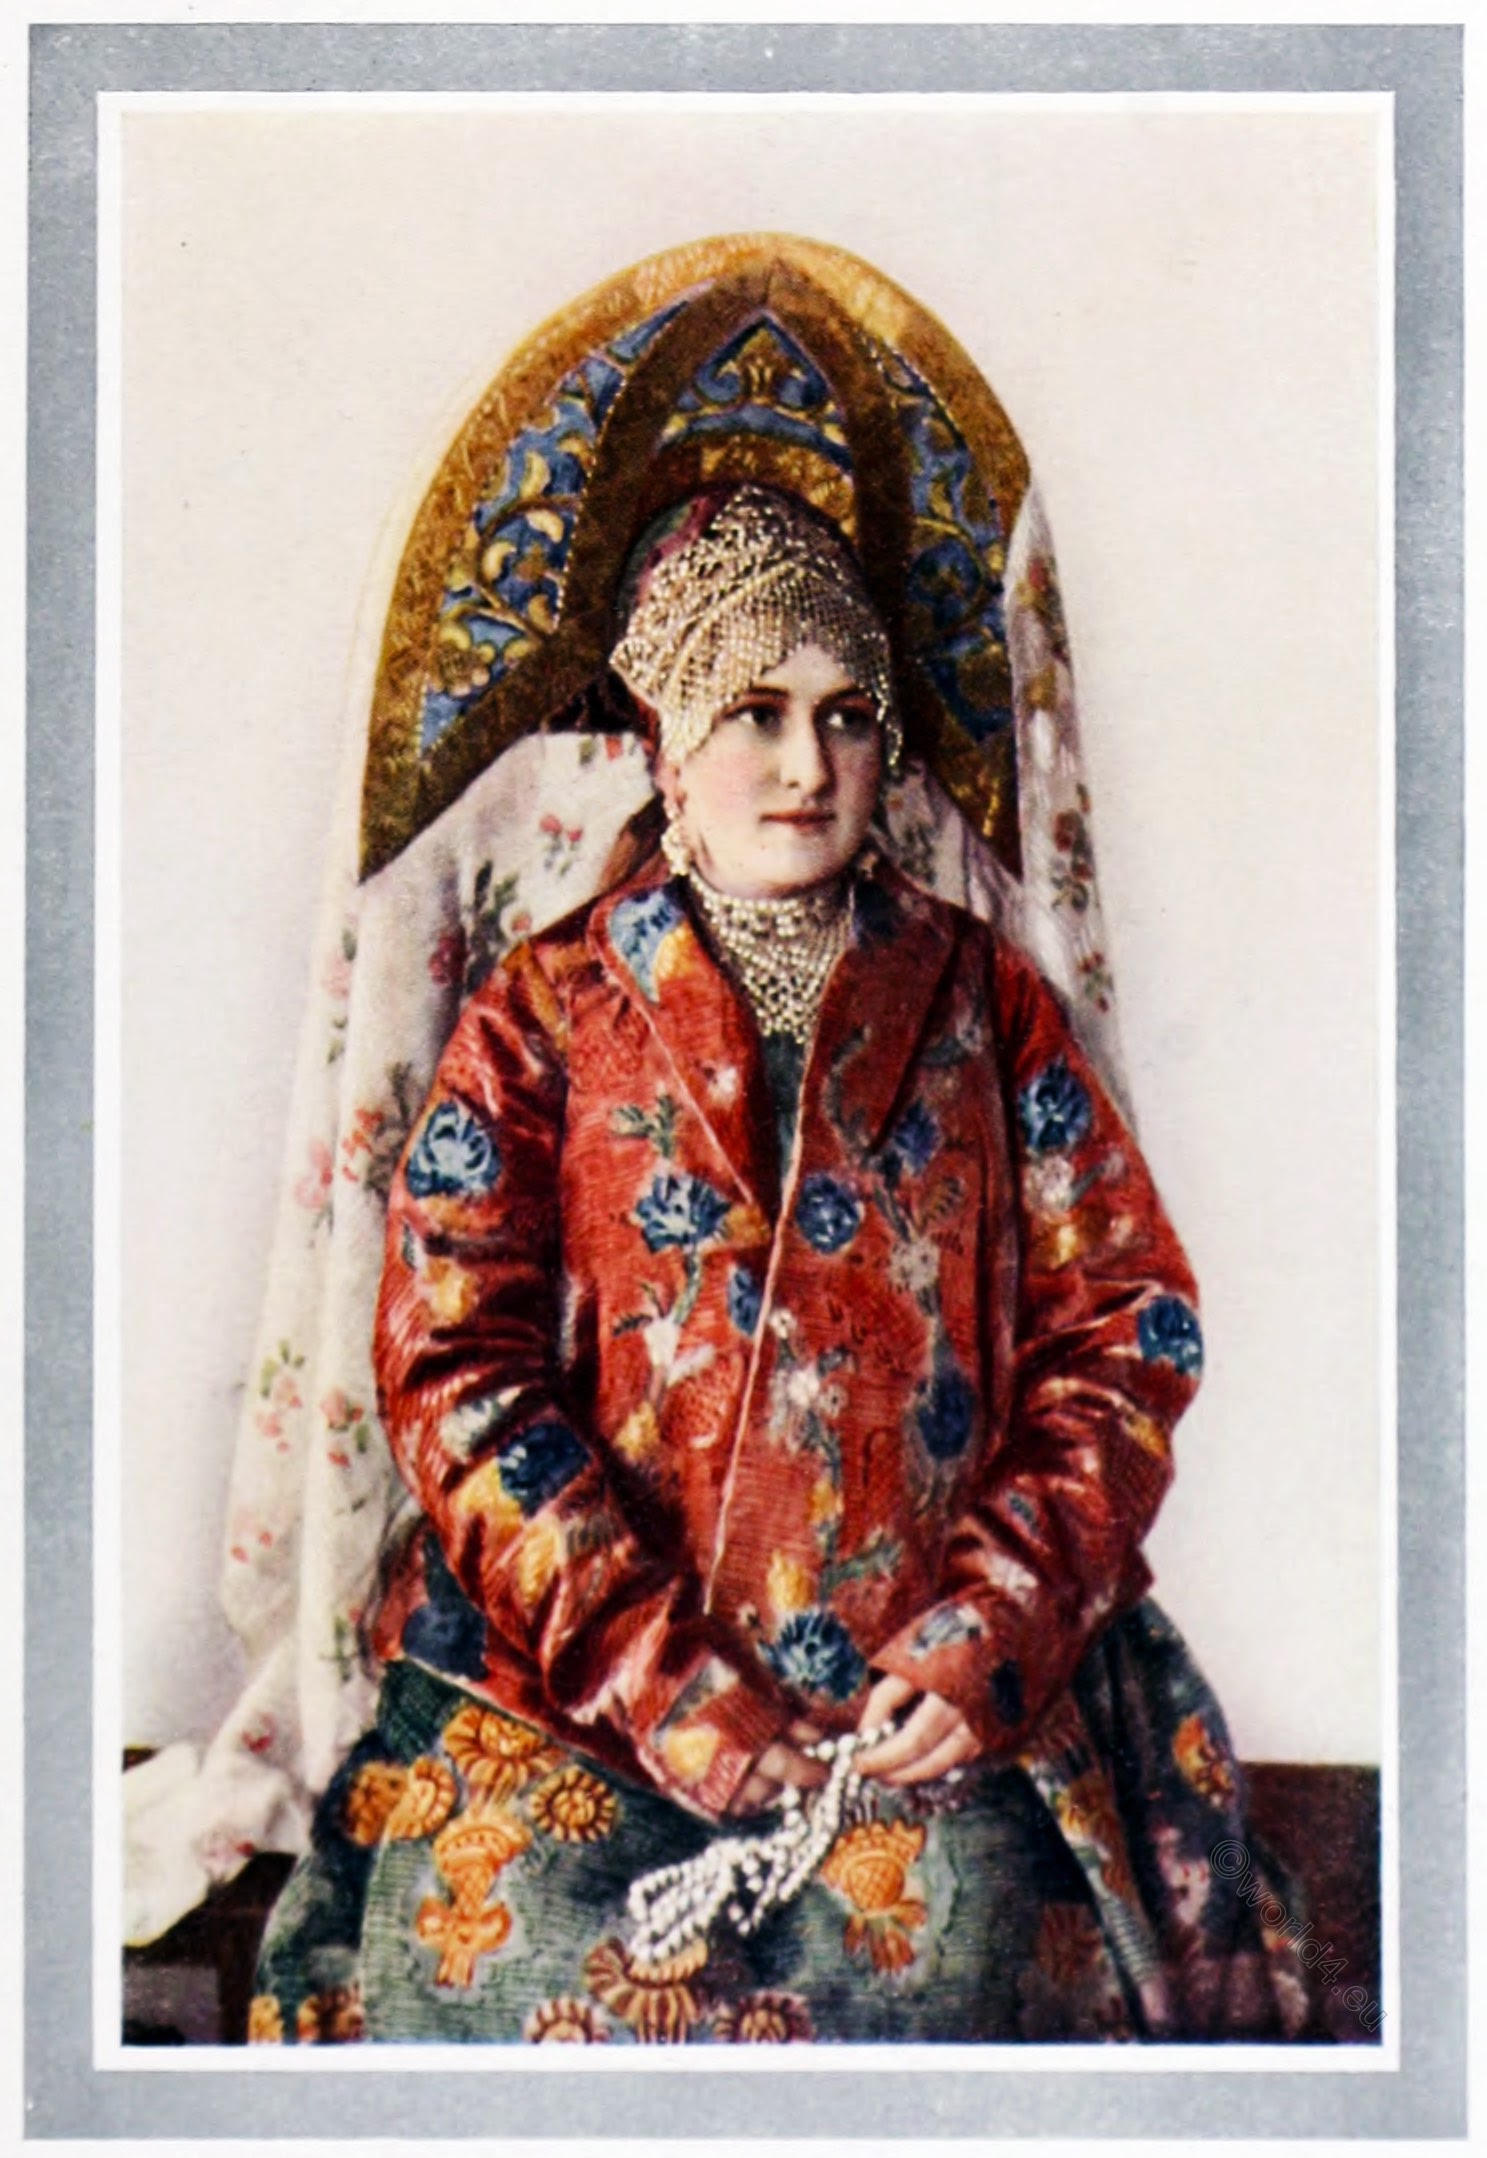 Sarafan, Peasant, costume, Vladimir, Great Russia,